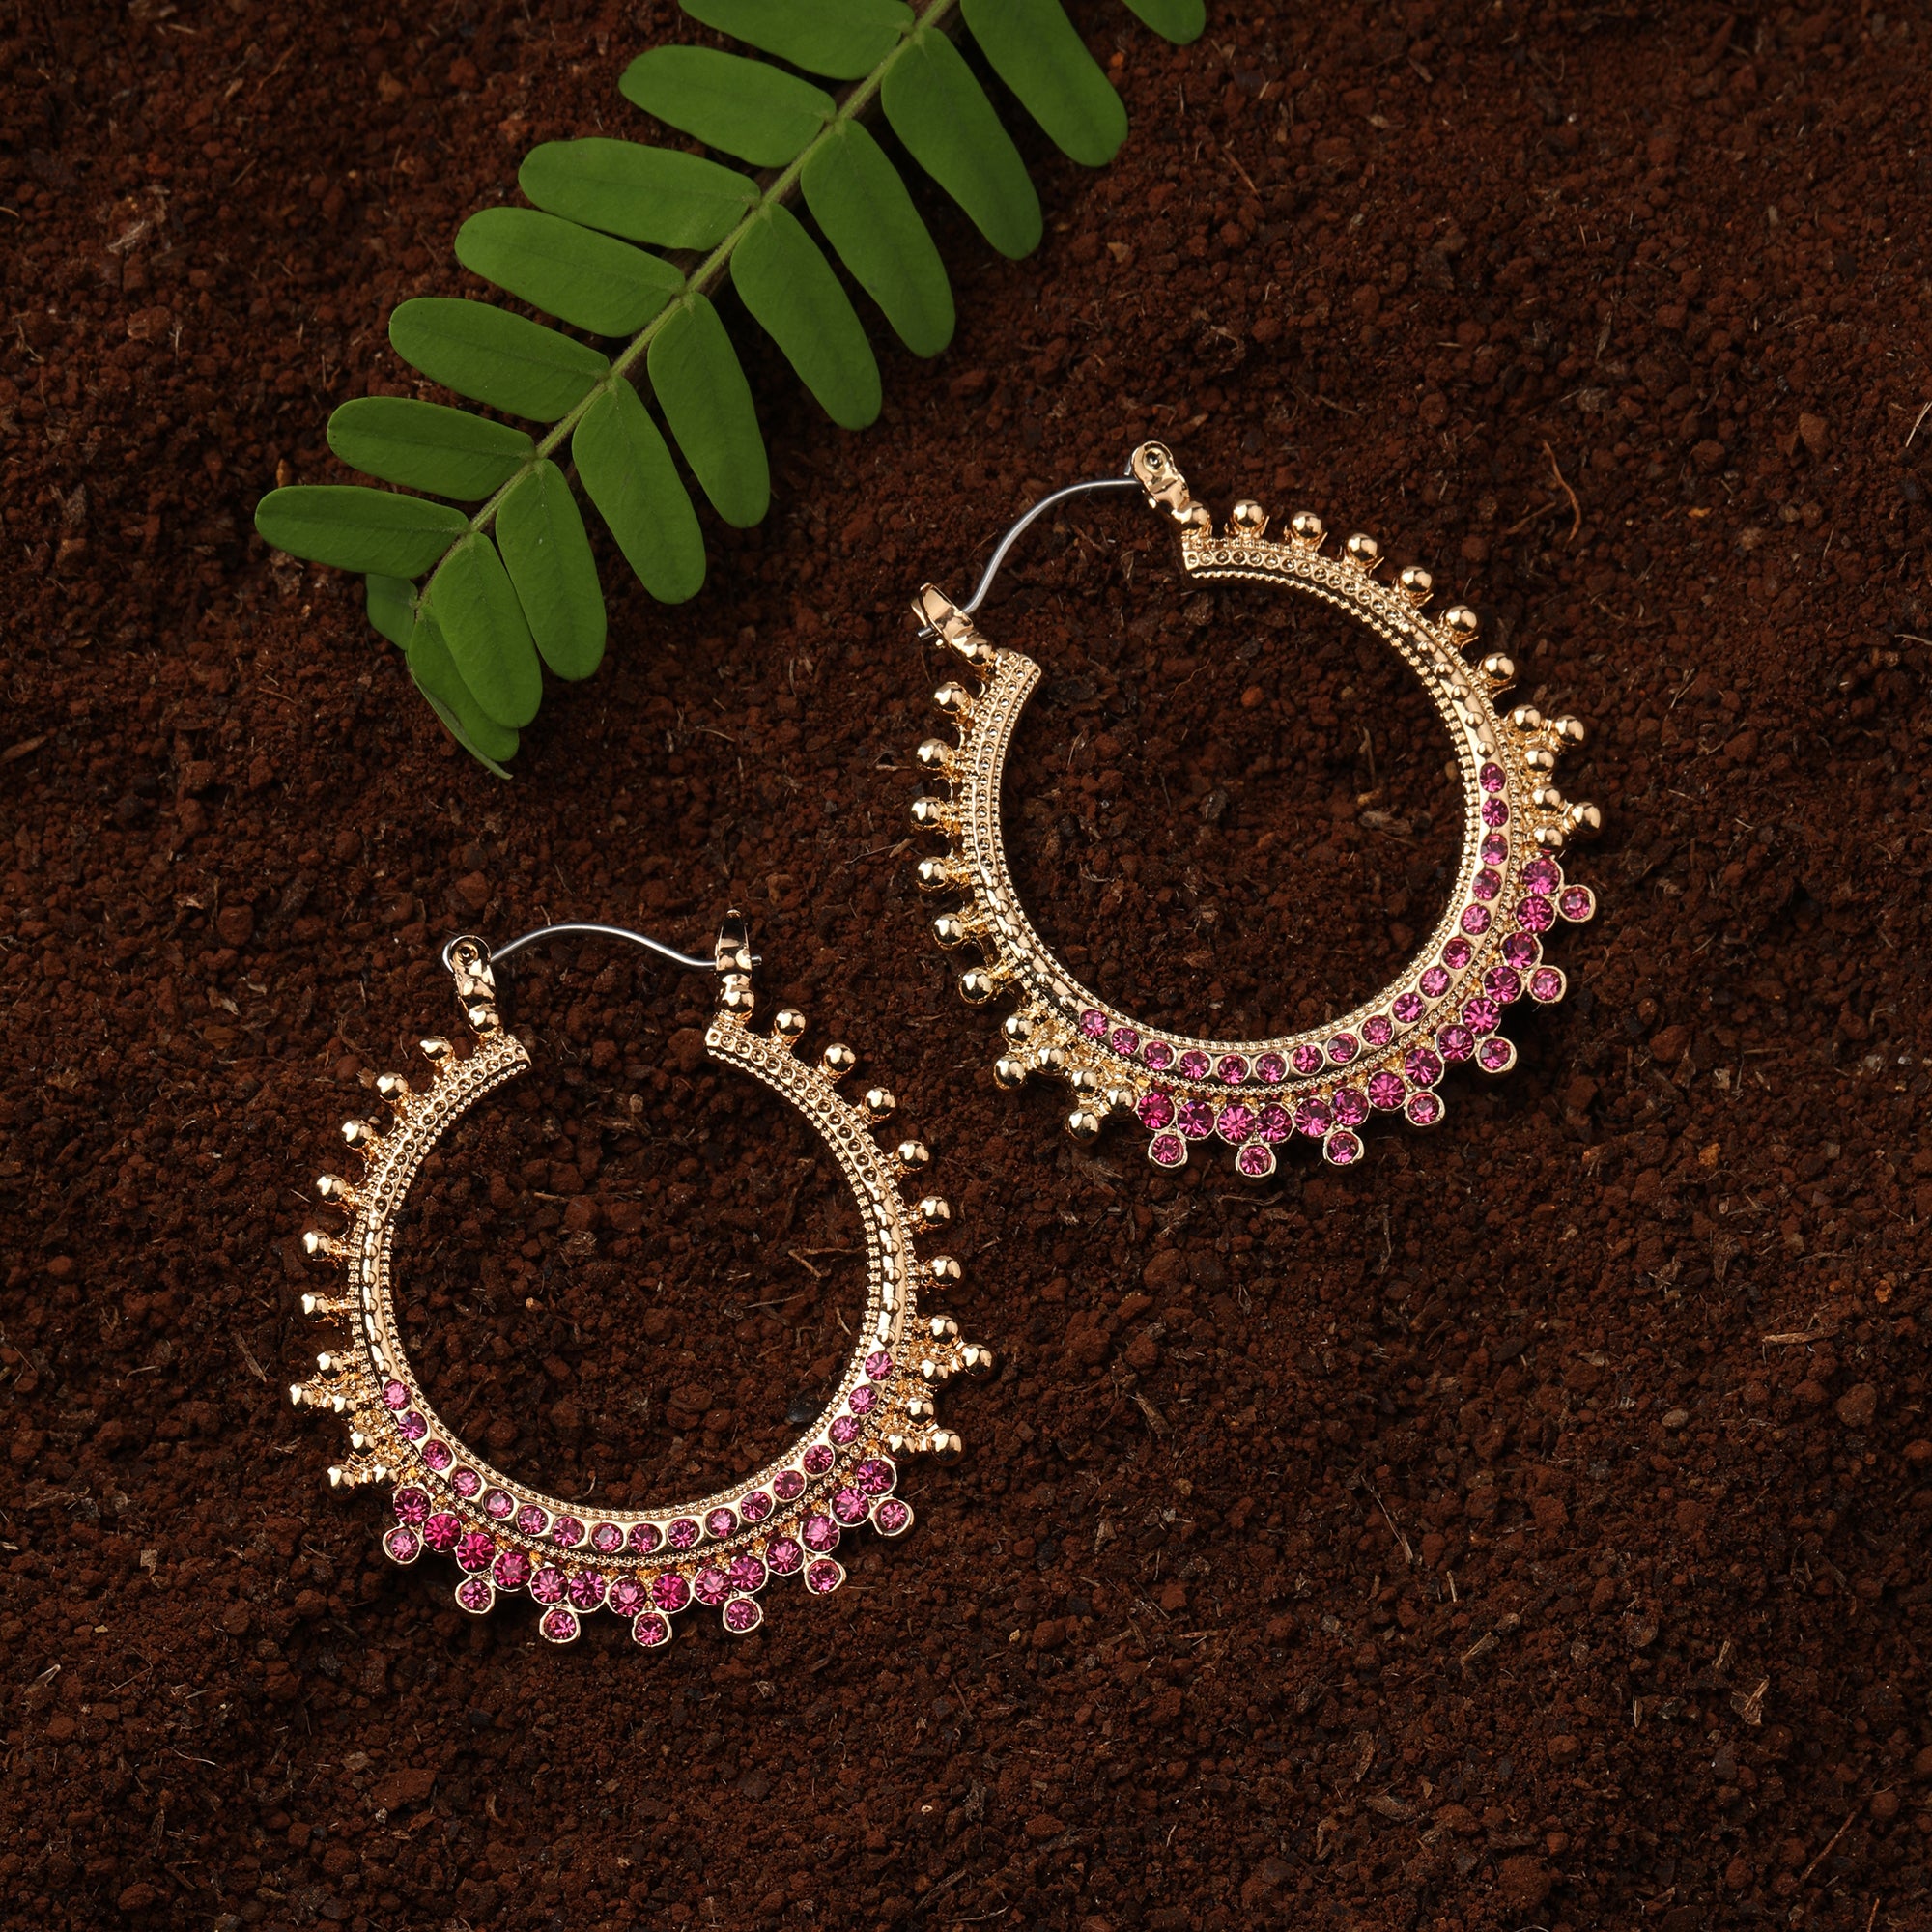 Accessorize London Women'S Pink & Golden Hoop Earrings